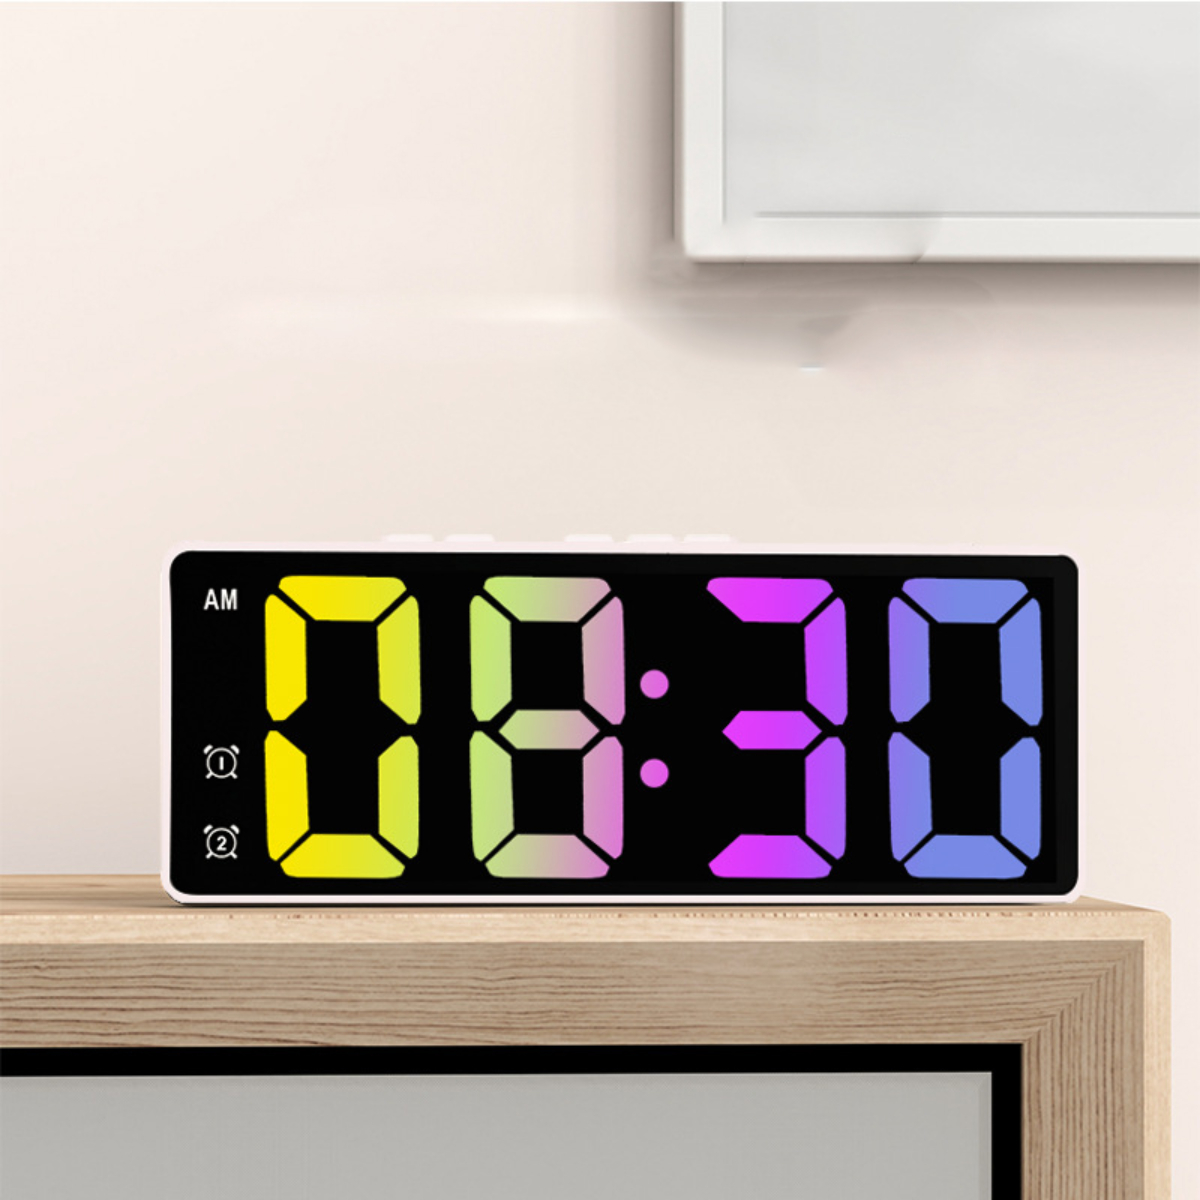 Alarm - Schwarzer BYTELIKE elektronische Sprachsteuerung, HD-Digitalanzeige LED-Spiegelwecker